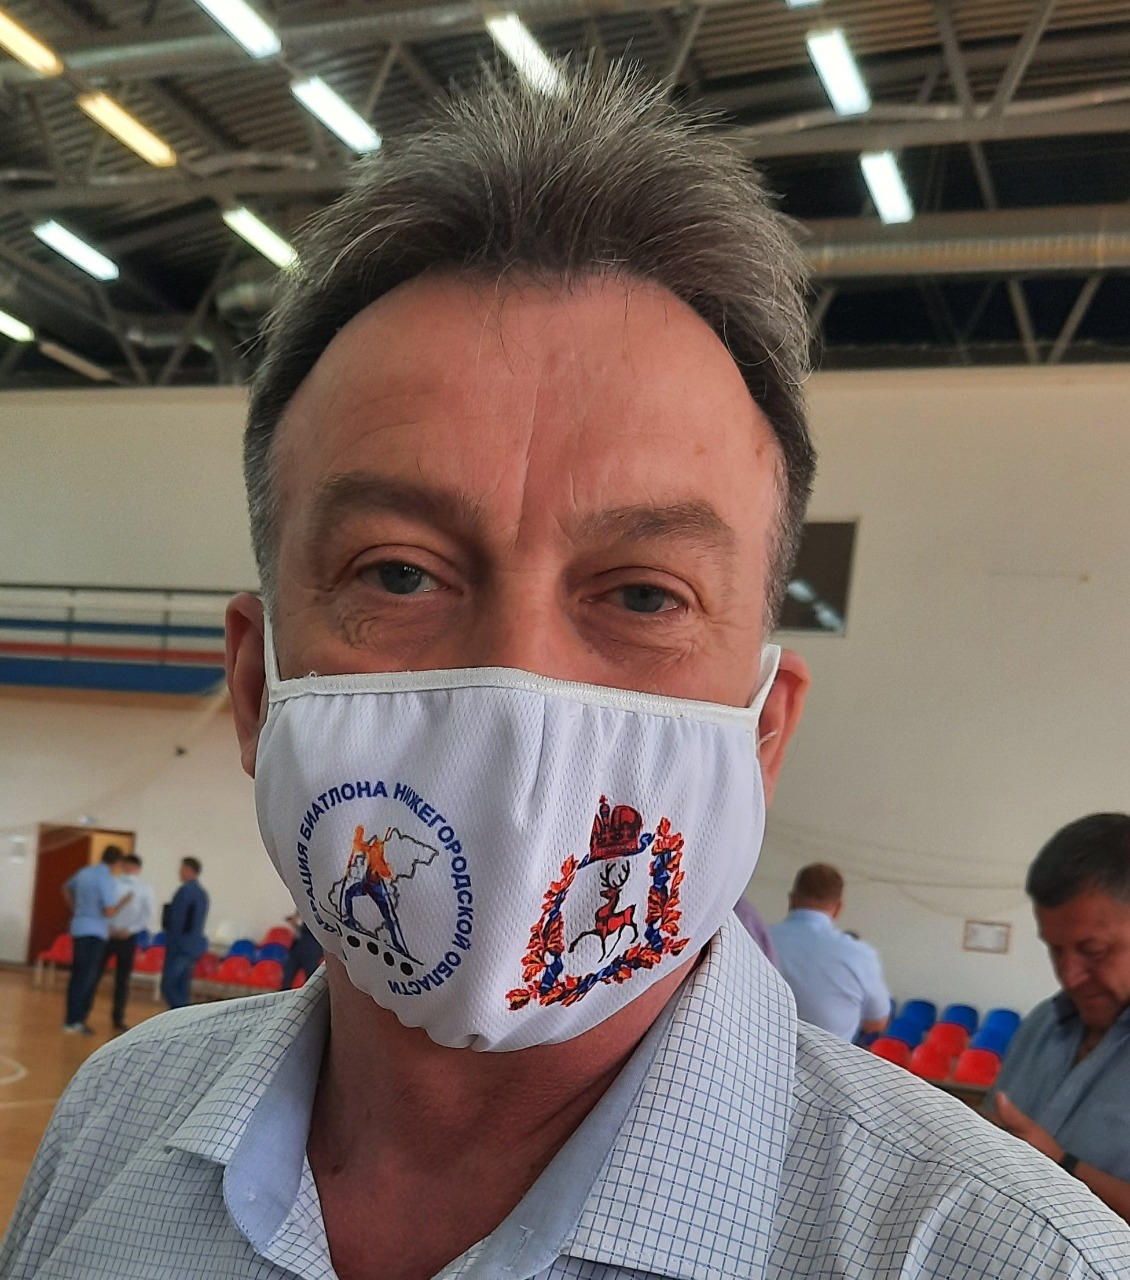 Делегат от Нижегородской области в брендированной защитной маске 